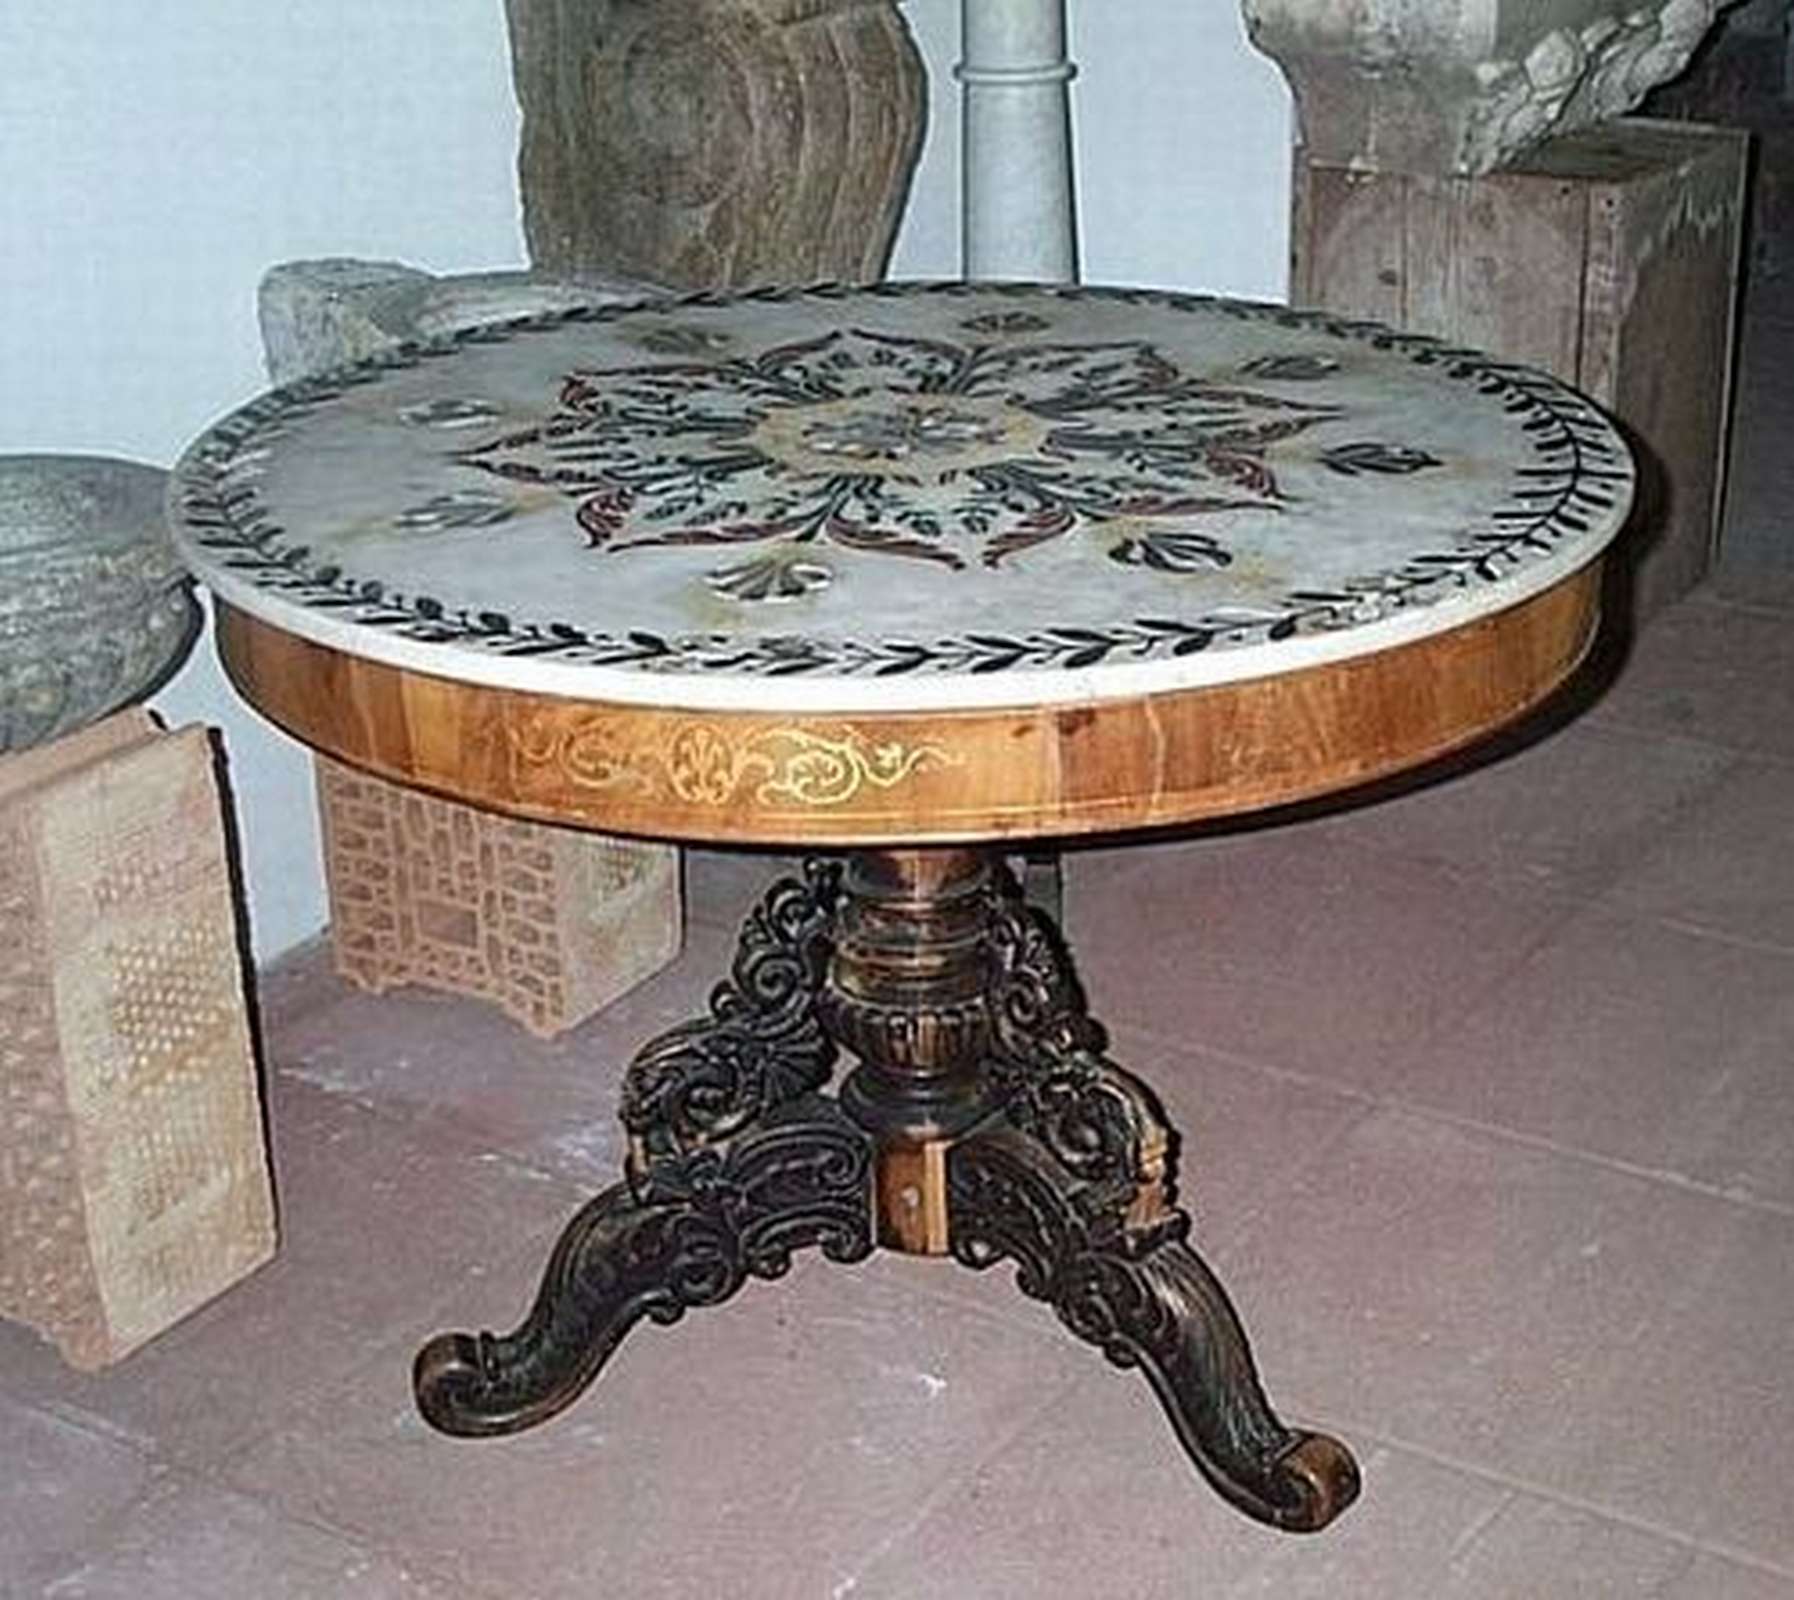 Antica base in legno - Tavoli in legno - Tavoli e complementi - Prodotti - Antichità Fiorillo